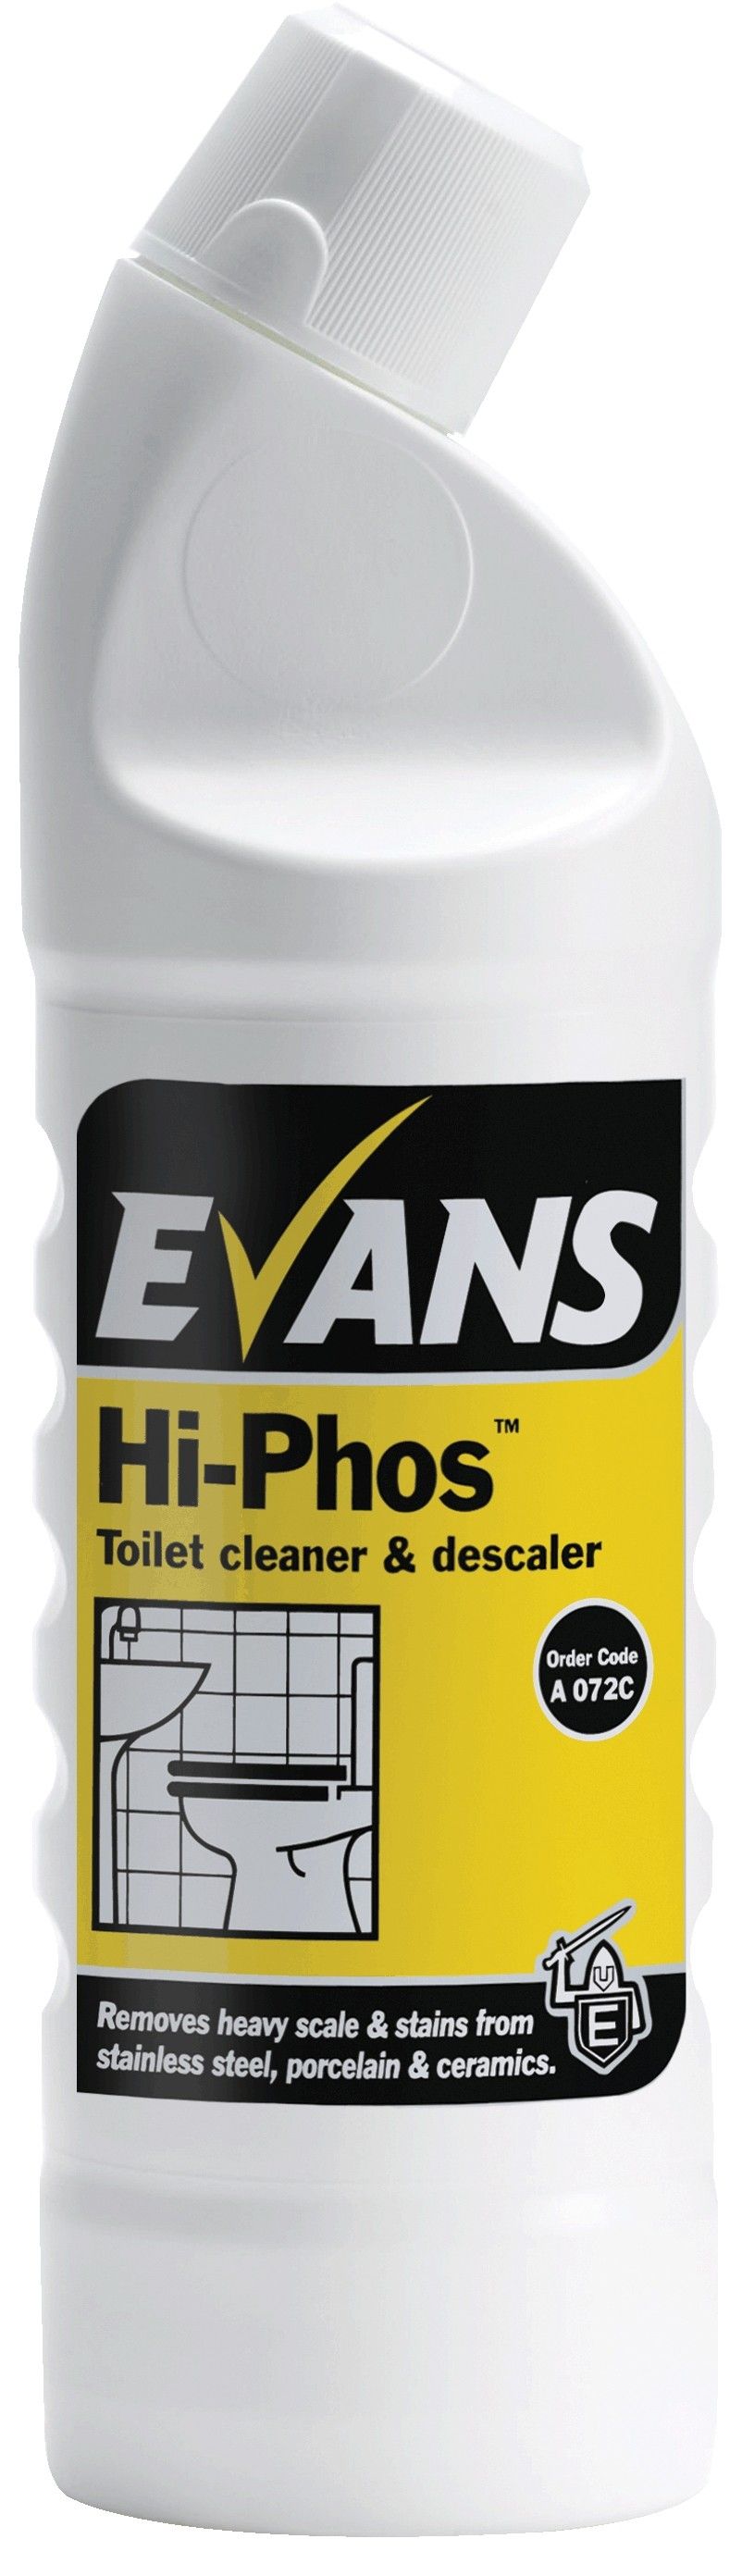 Evans Hi-Phos - Toilet Cleaner & Descaler 1 Ltr